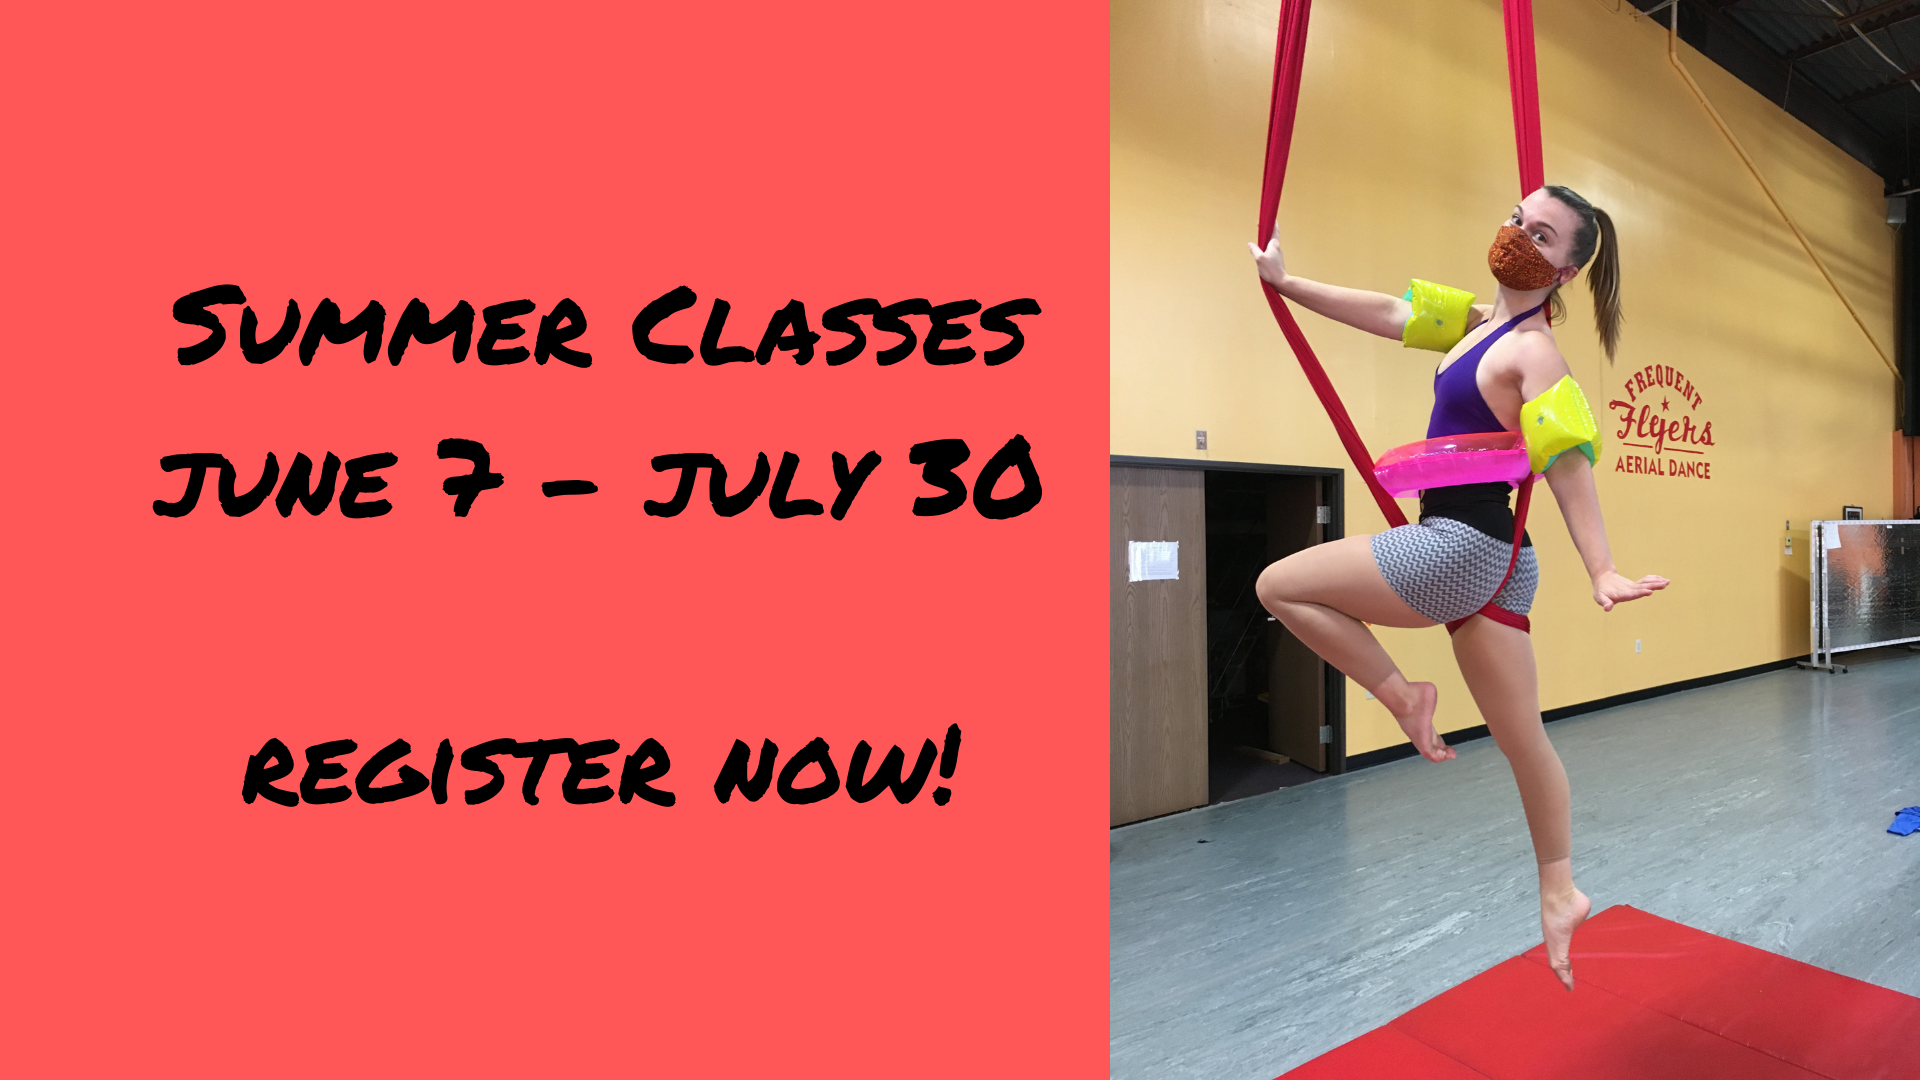 Register now! Summer classes start June 7 Aerial Dance Classes